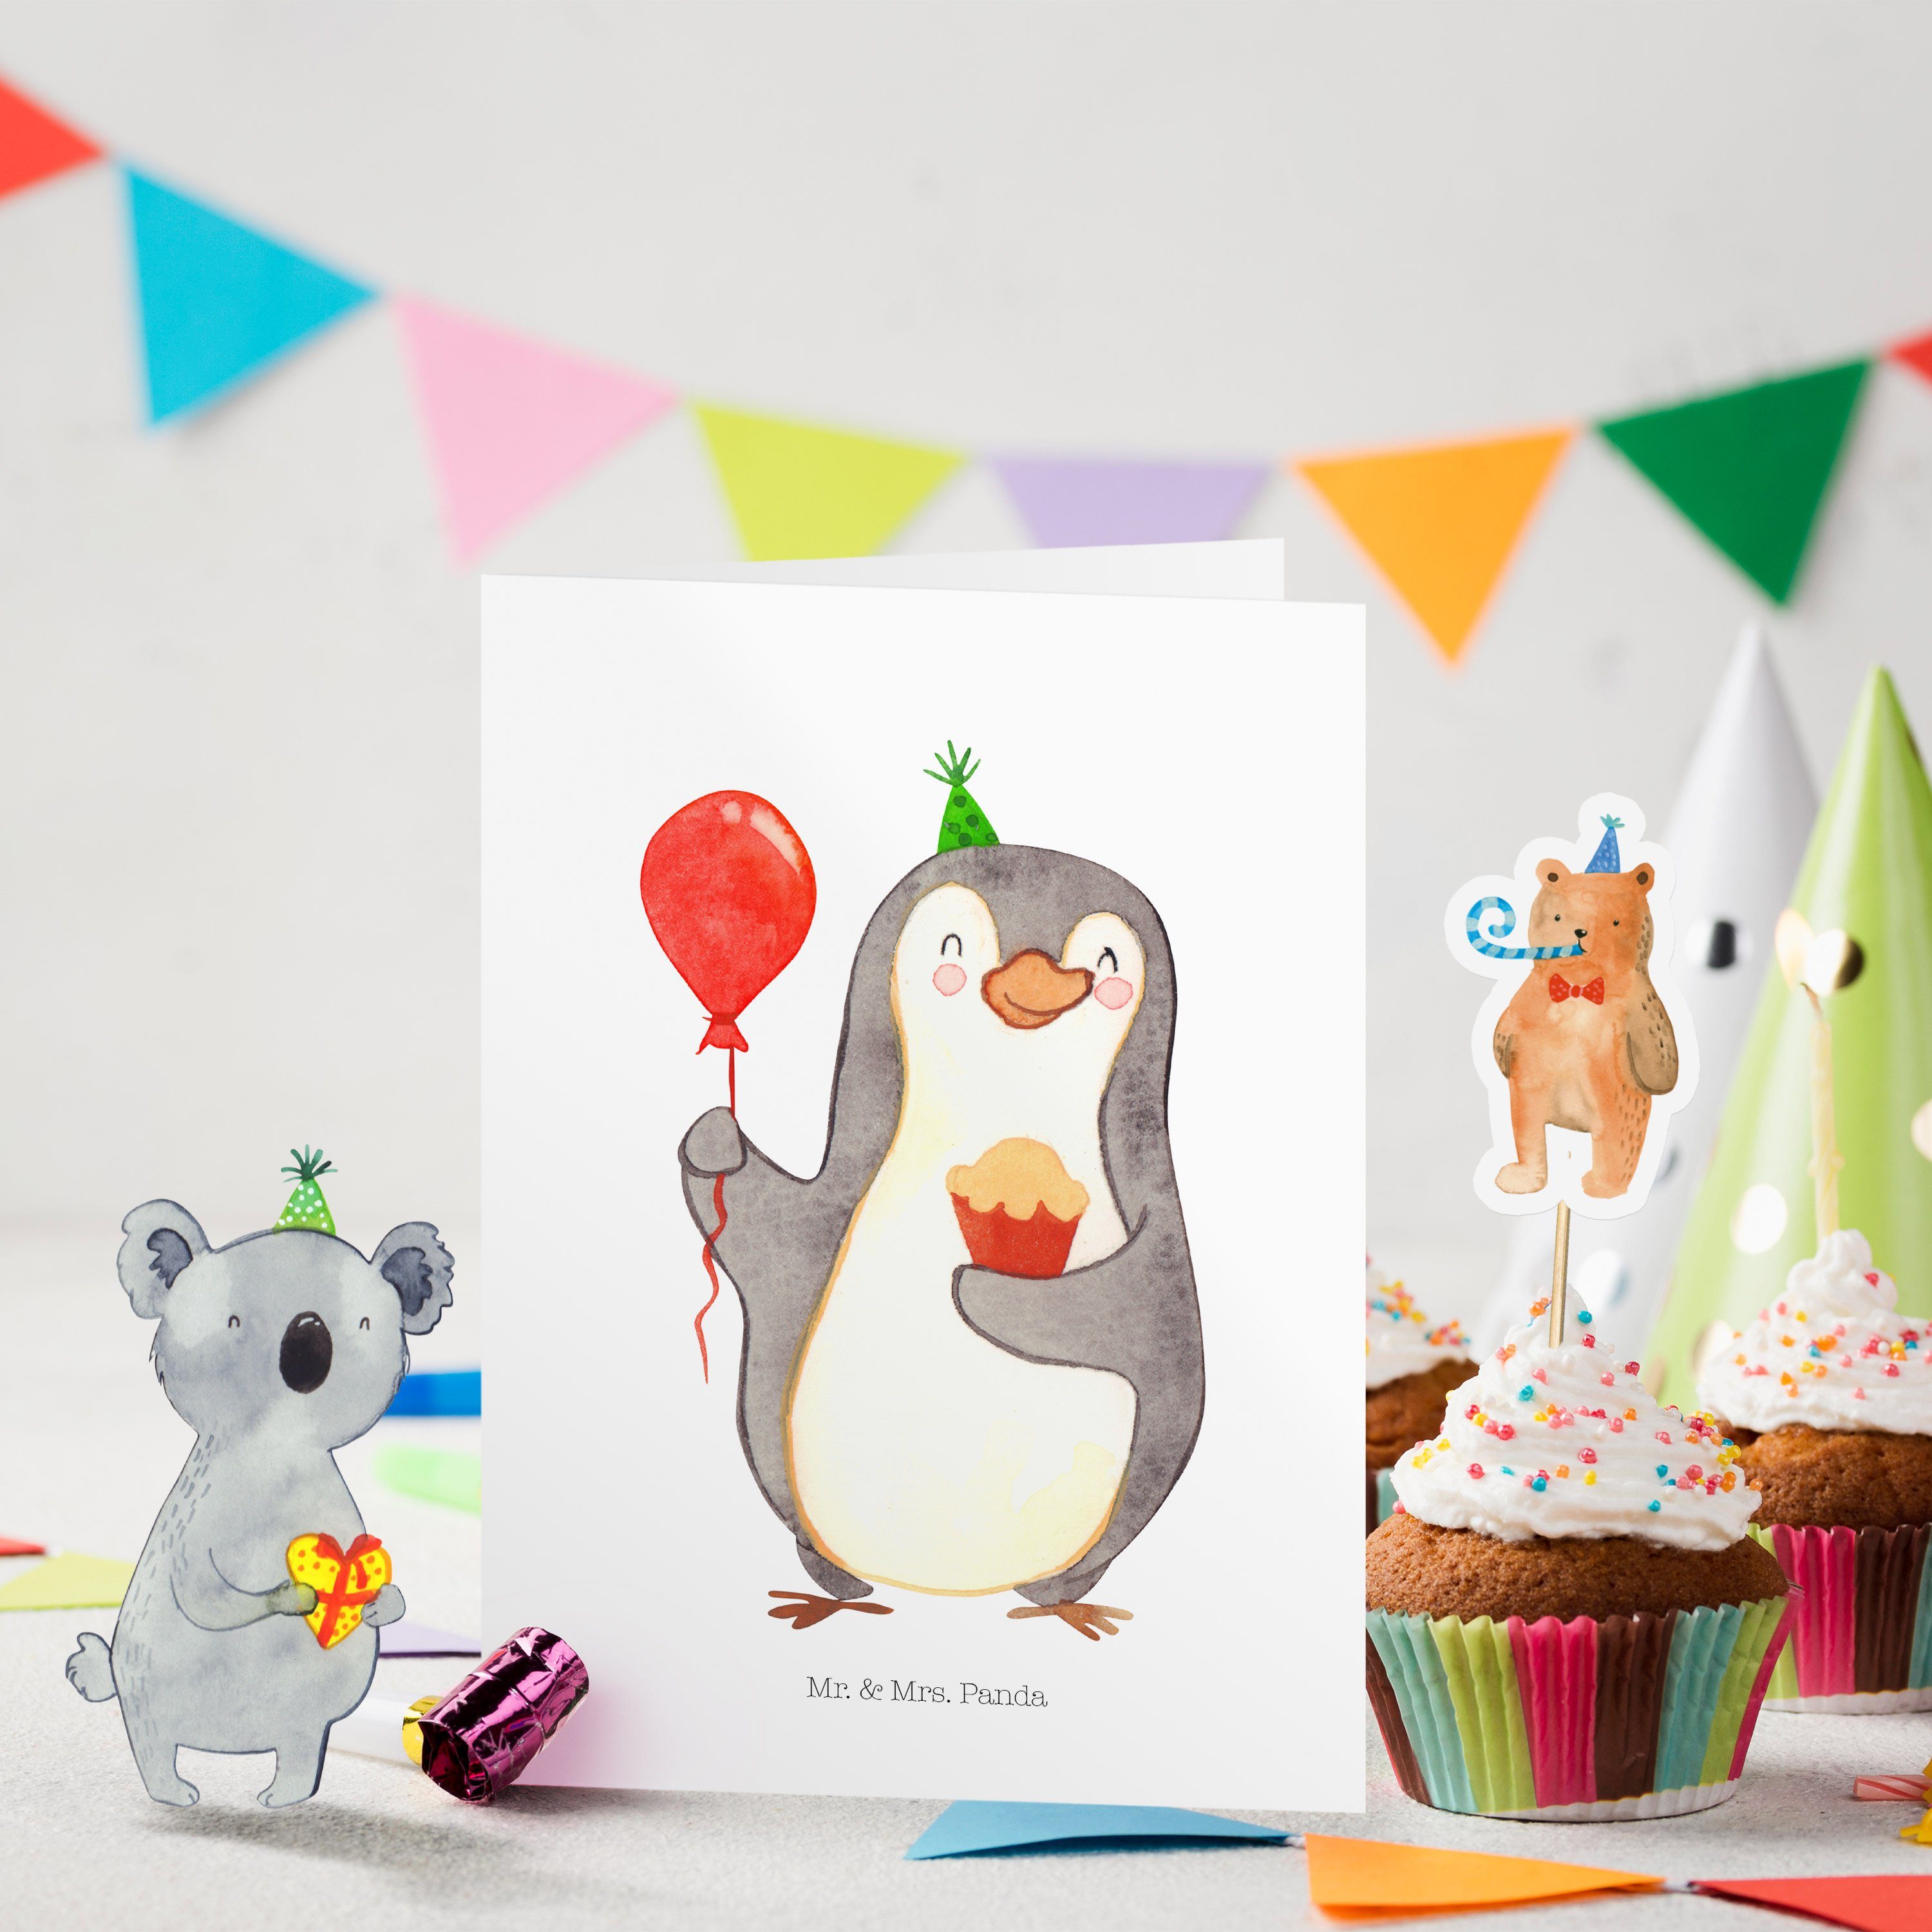 Panda Geburtstagskarten Geburtstag & Geschenk, - Party, Mr. Einladungskarte Weiß - Mrs. Pinguin Kuchen,